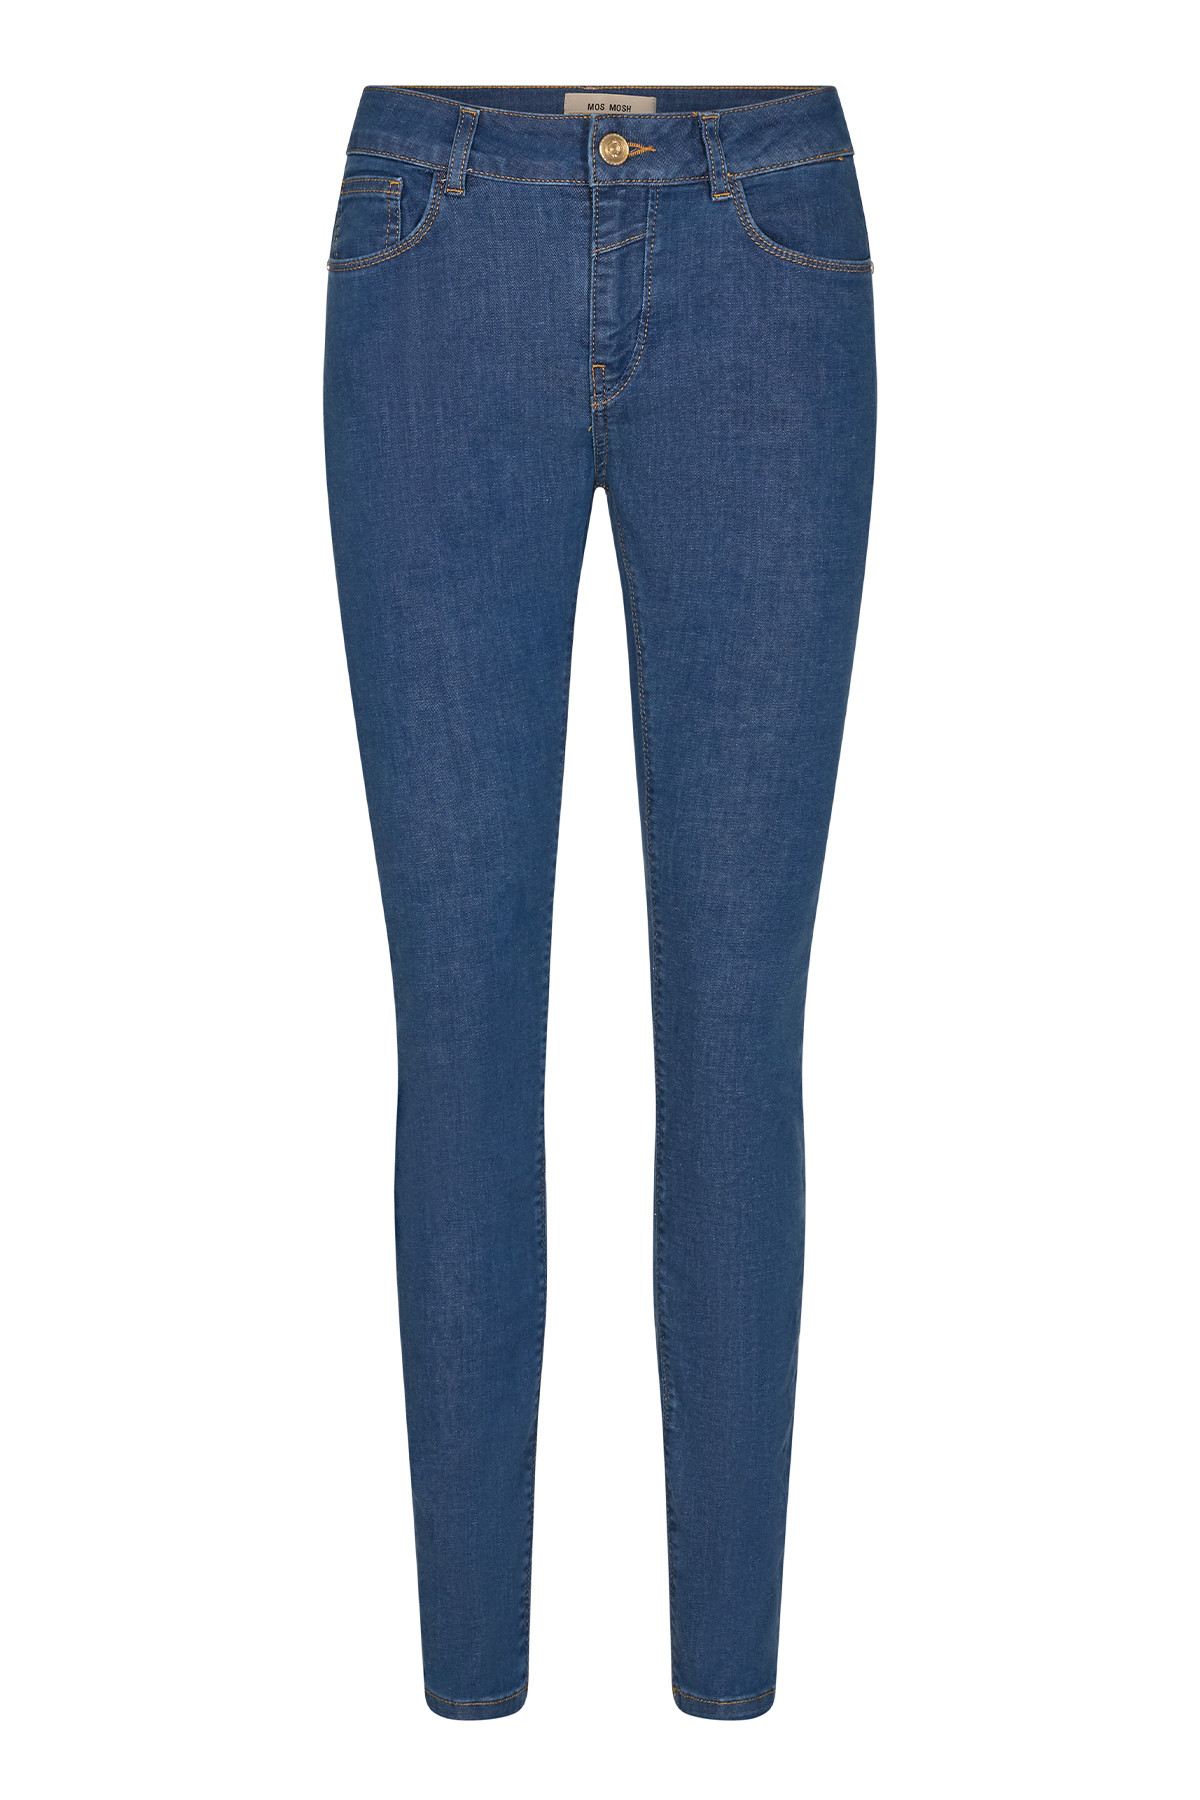 #2 - Mos Mosh Naomi Cover Jeans, Farve: Blå, Størrelse: 25, Dame